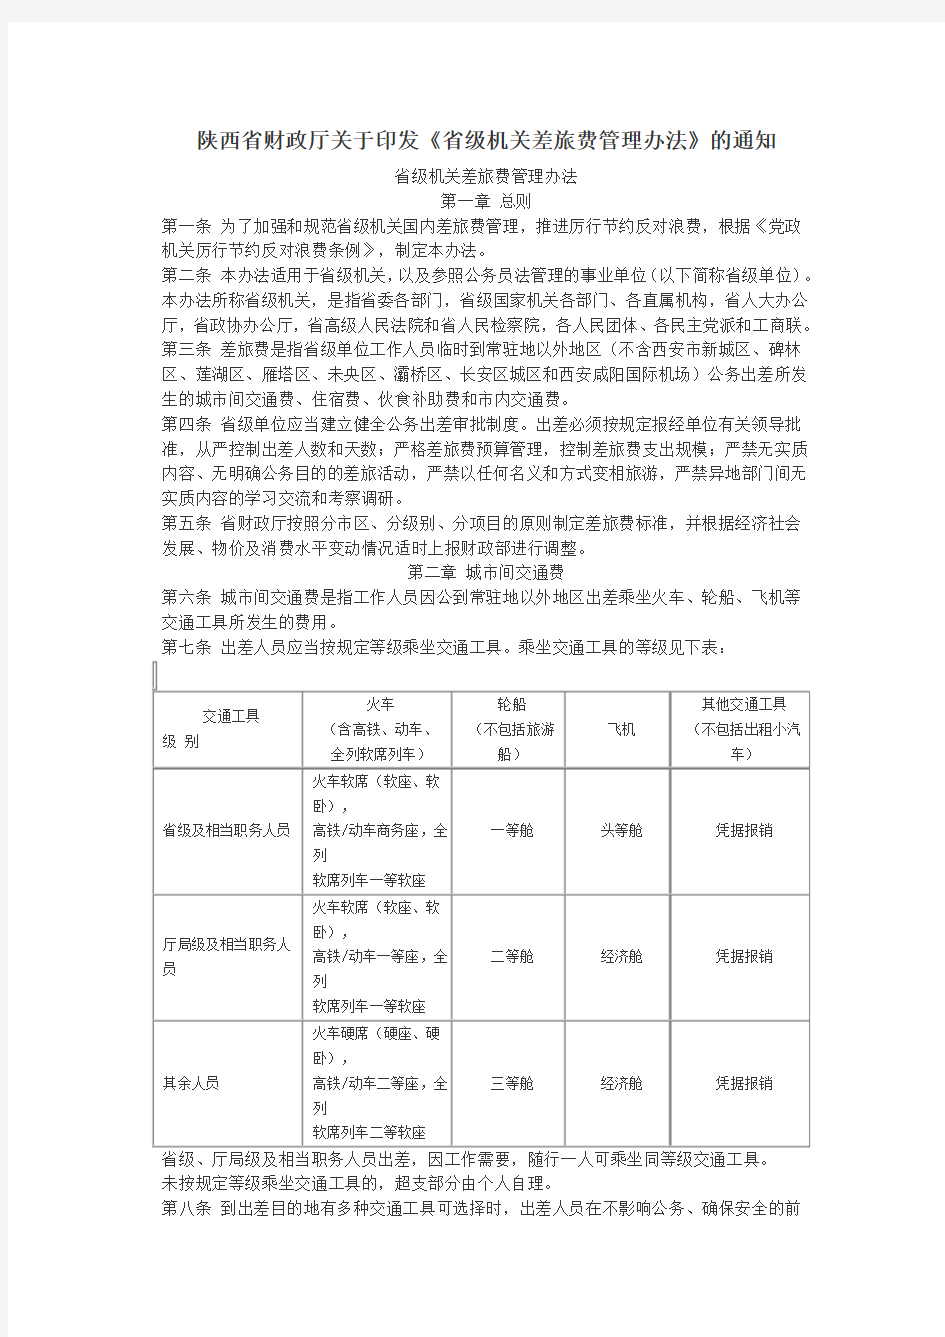 陕西省财政厅关于印发《省级机关差旅费管理办法》的通知